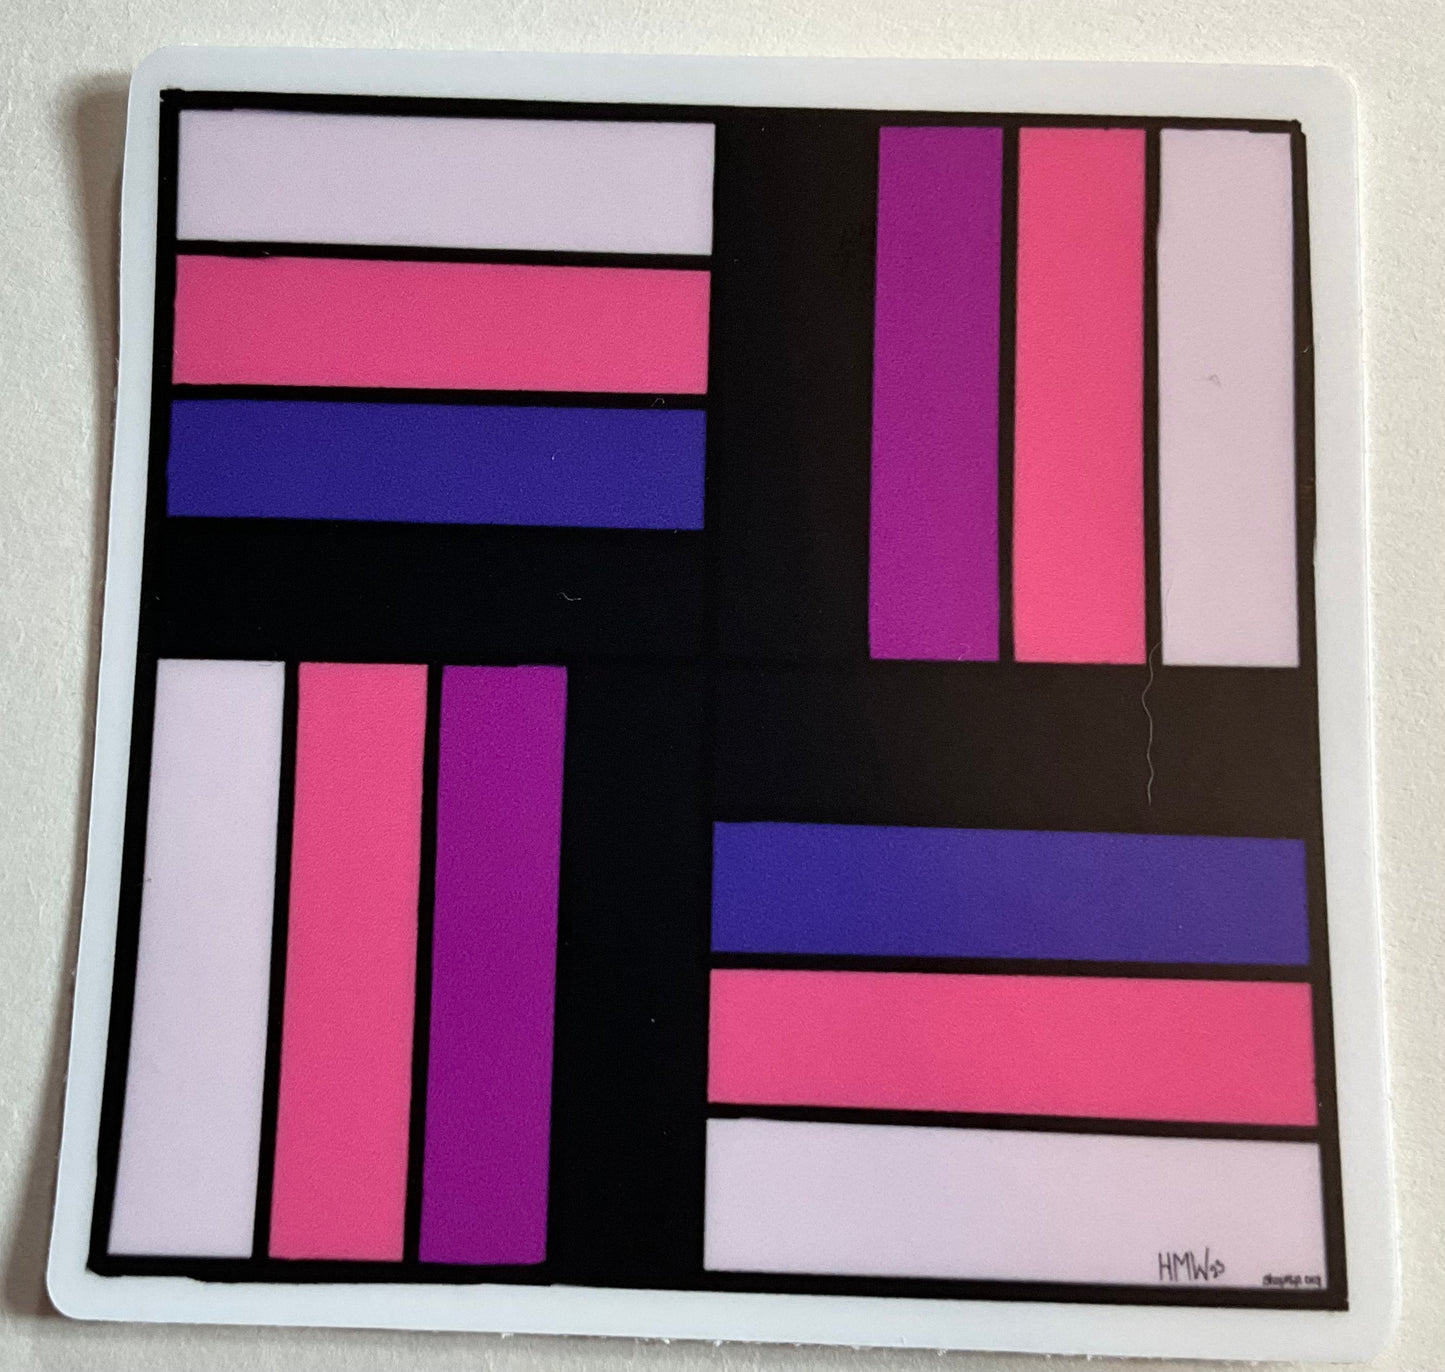 #013: Genderfluid Pride Flag Quilt Block, 3"x3" Thick Vinyl Sticker